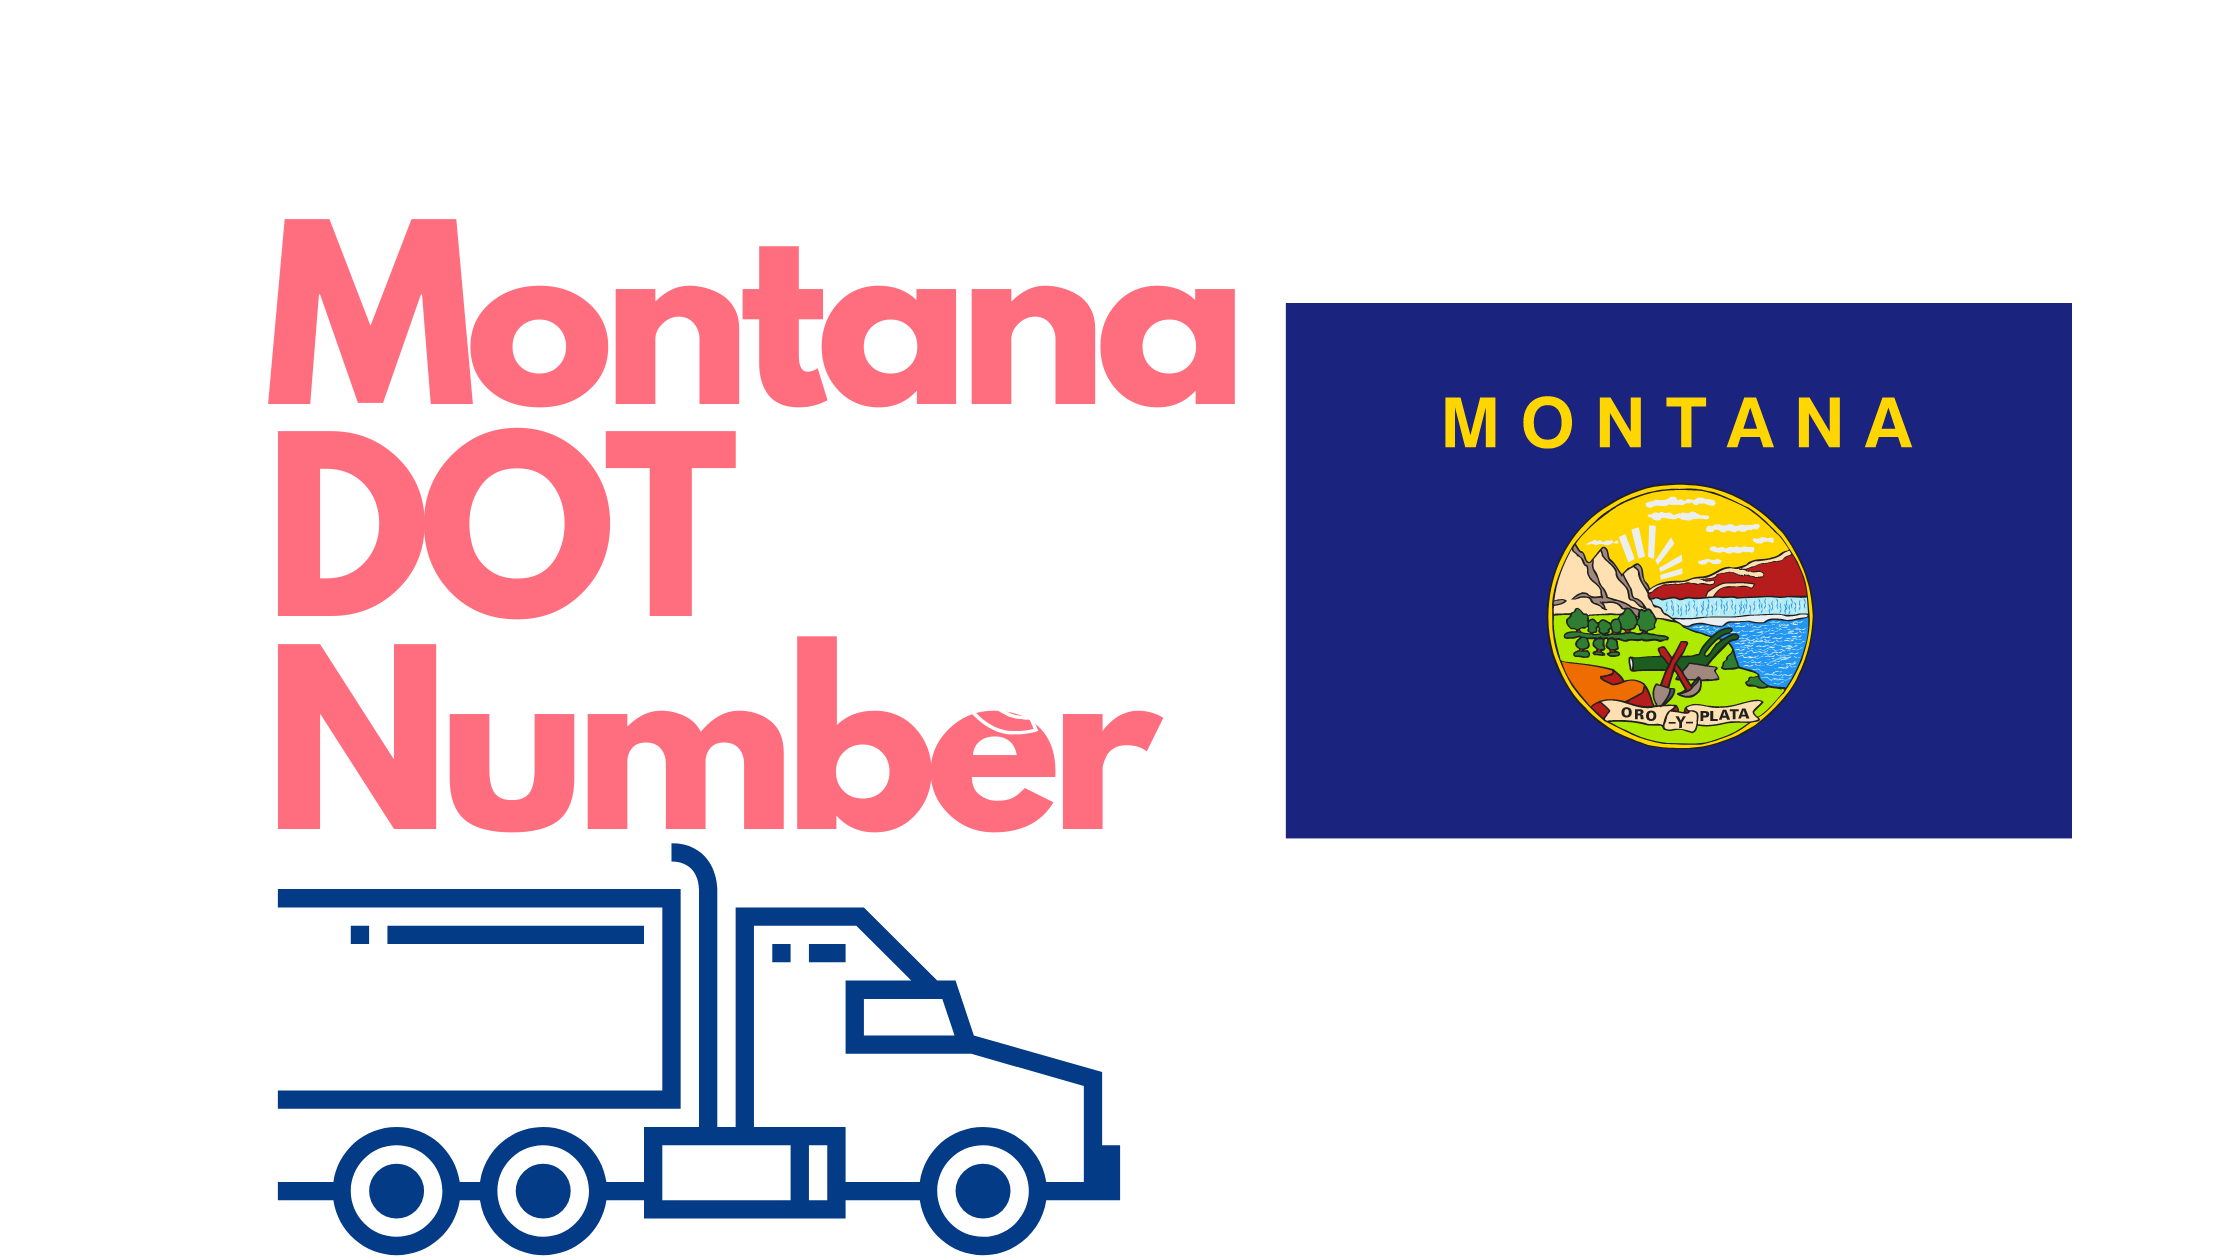 Montana DOT Number